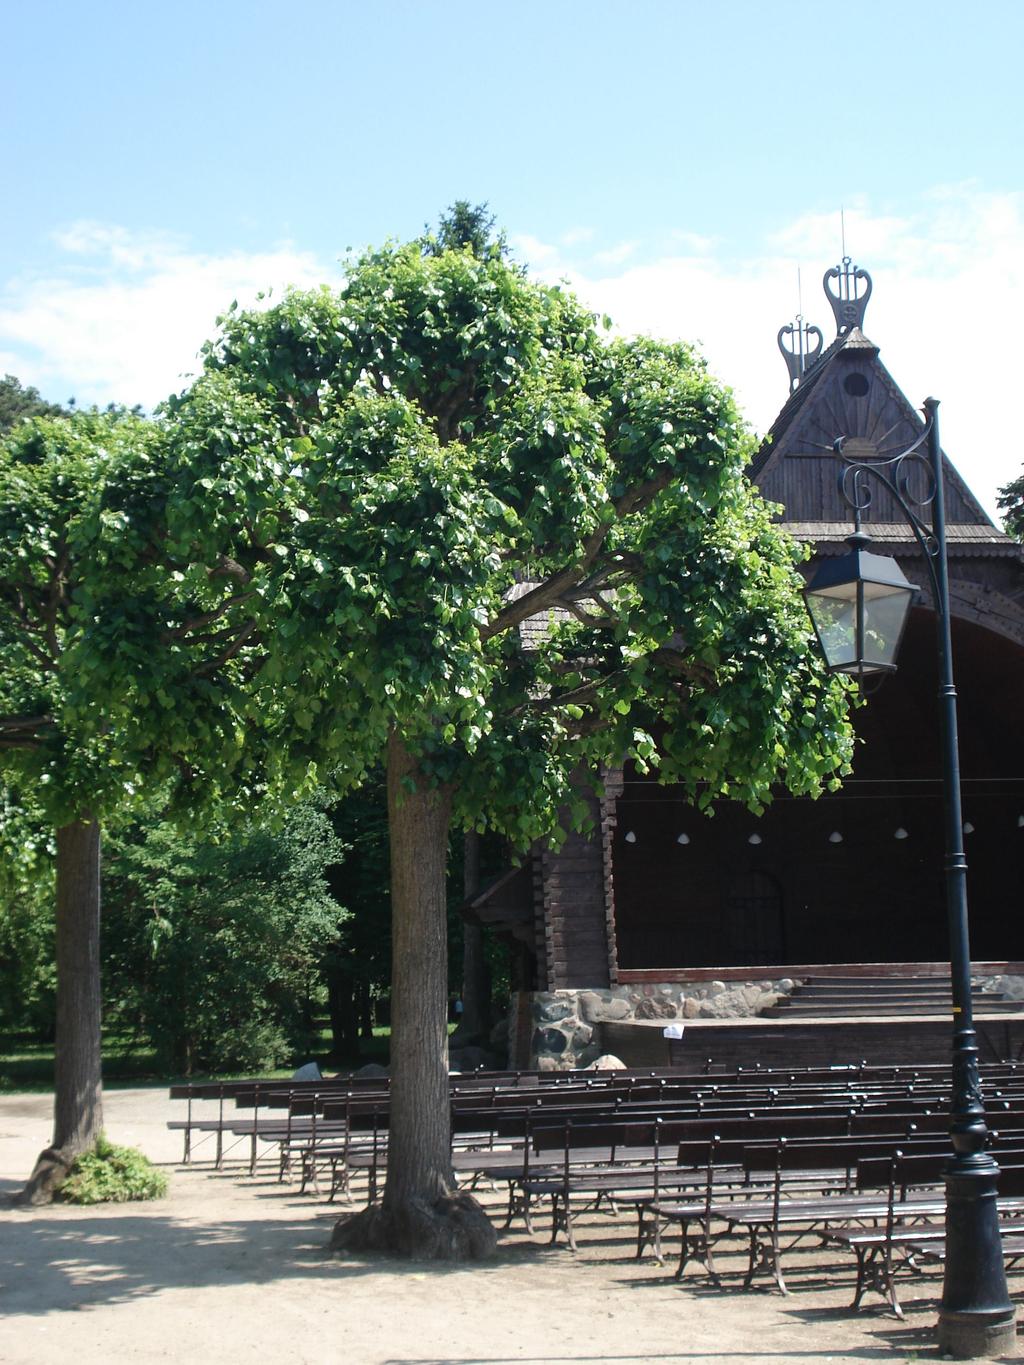 LIPA KRYMSKA Gatunek drzewa należący do rodziny ślazowatych. Jej pochodzenie jest nieznane. Jest to średnie drzewo liściaste, osiągające wysokość do 20 m.